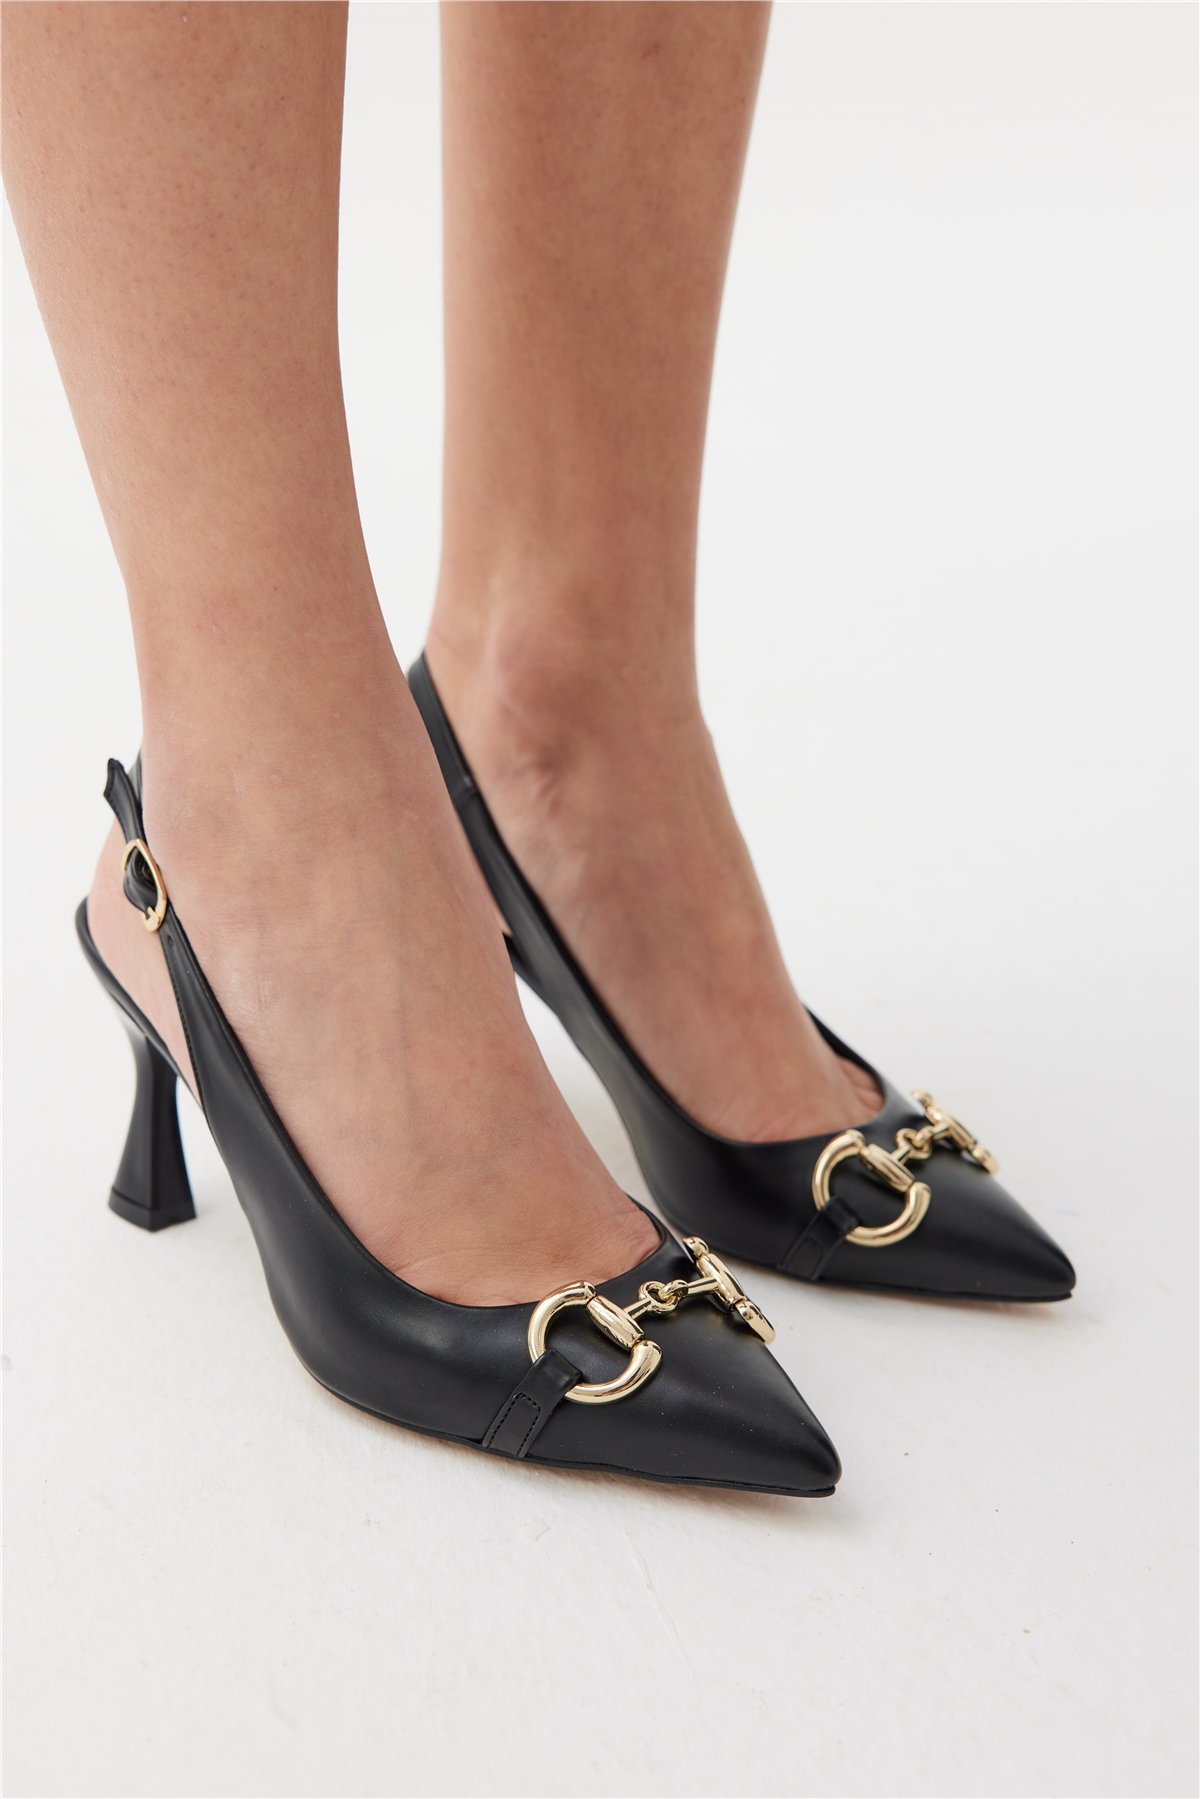 Damlax Kadın Topuklu Ayakkabı Siyah Deri